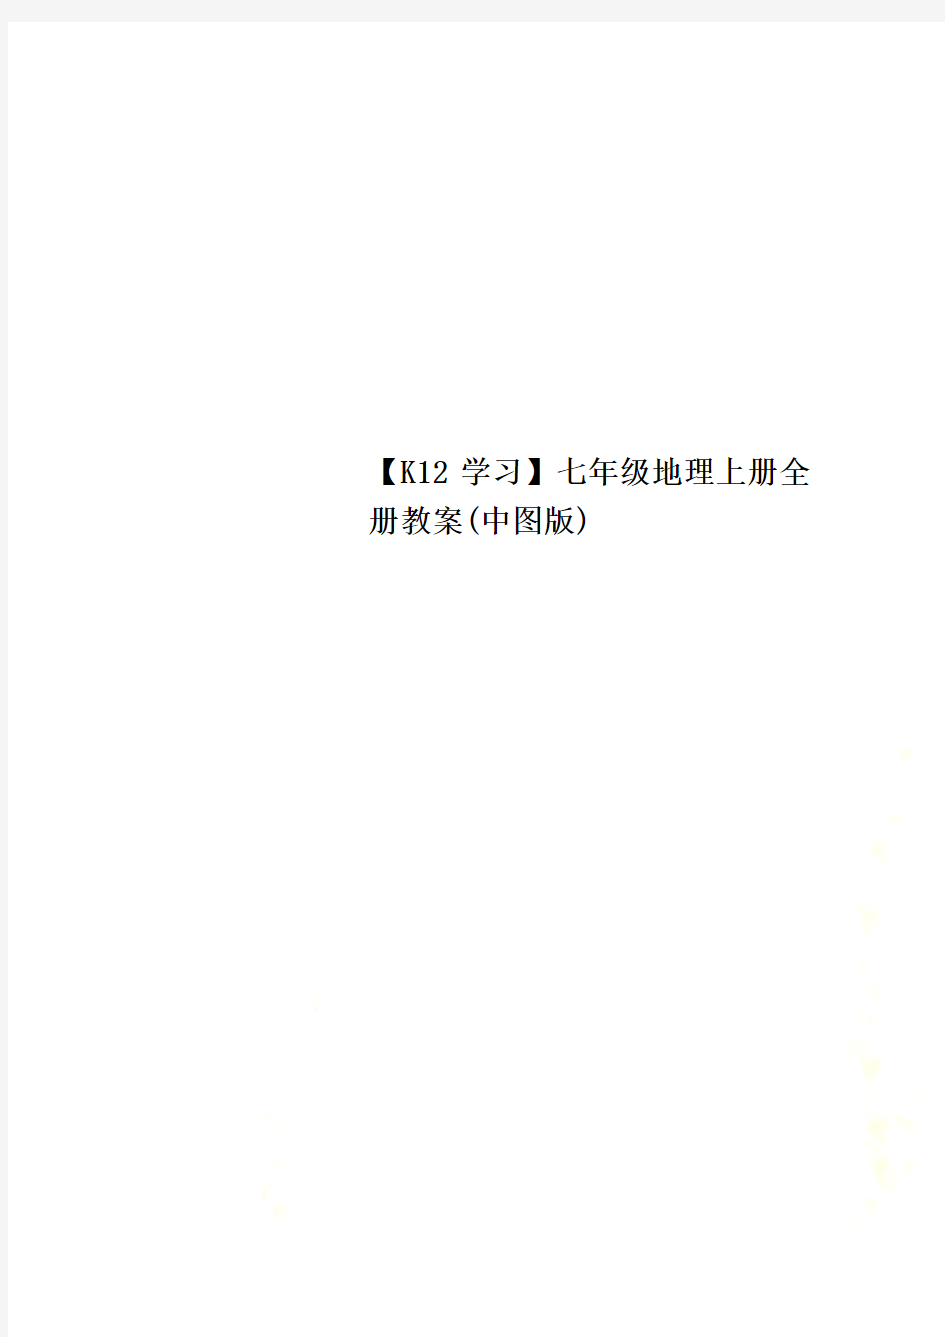 【K12学习】七年级地理上册全册教案(中图版)